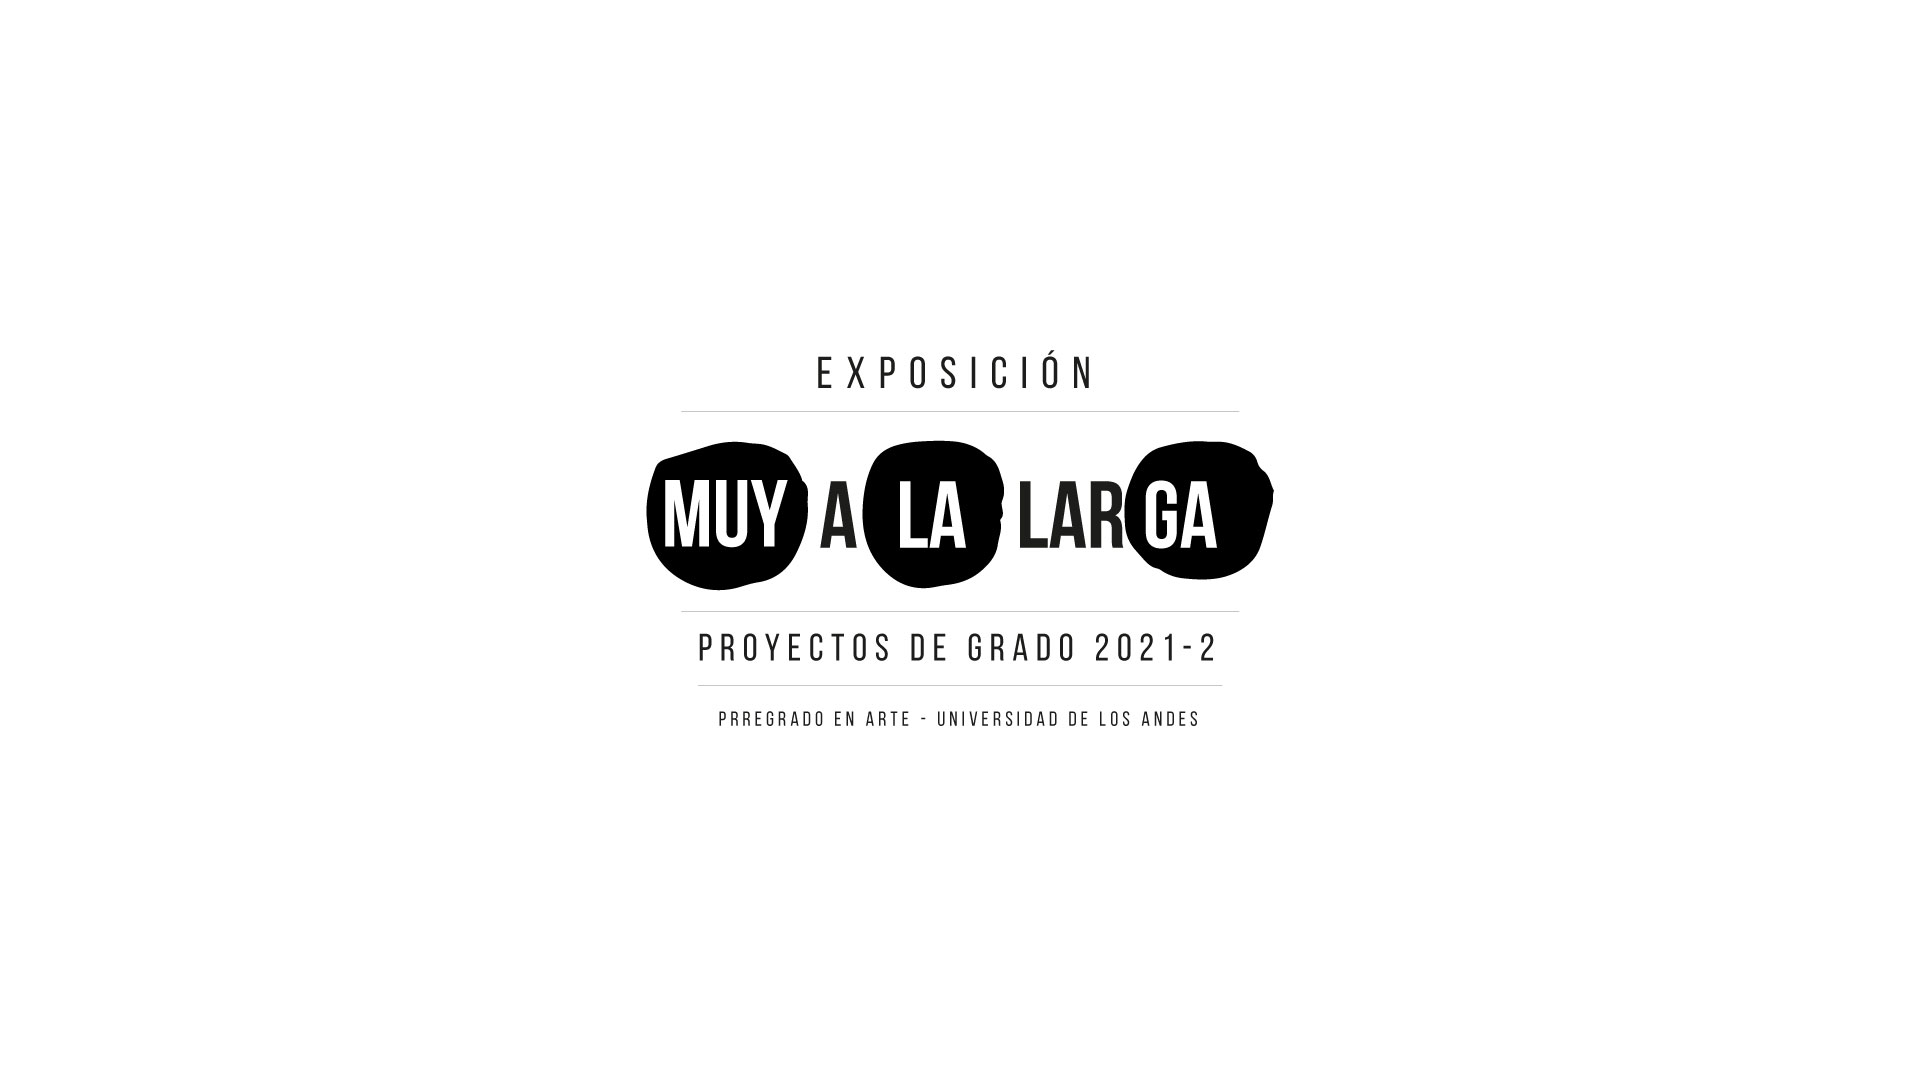 Visite la exposición del 13 al 17 de diciembre en el campus de Los Andes